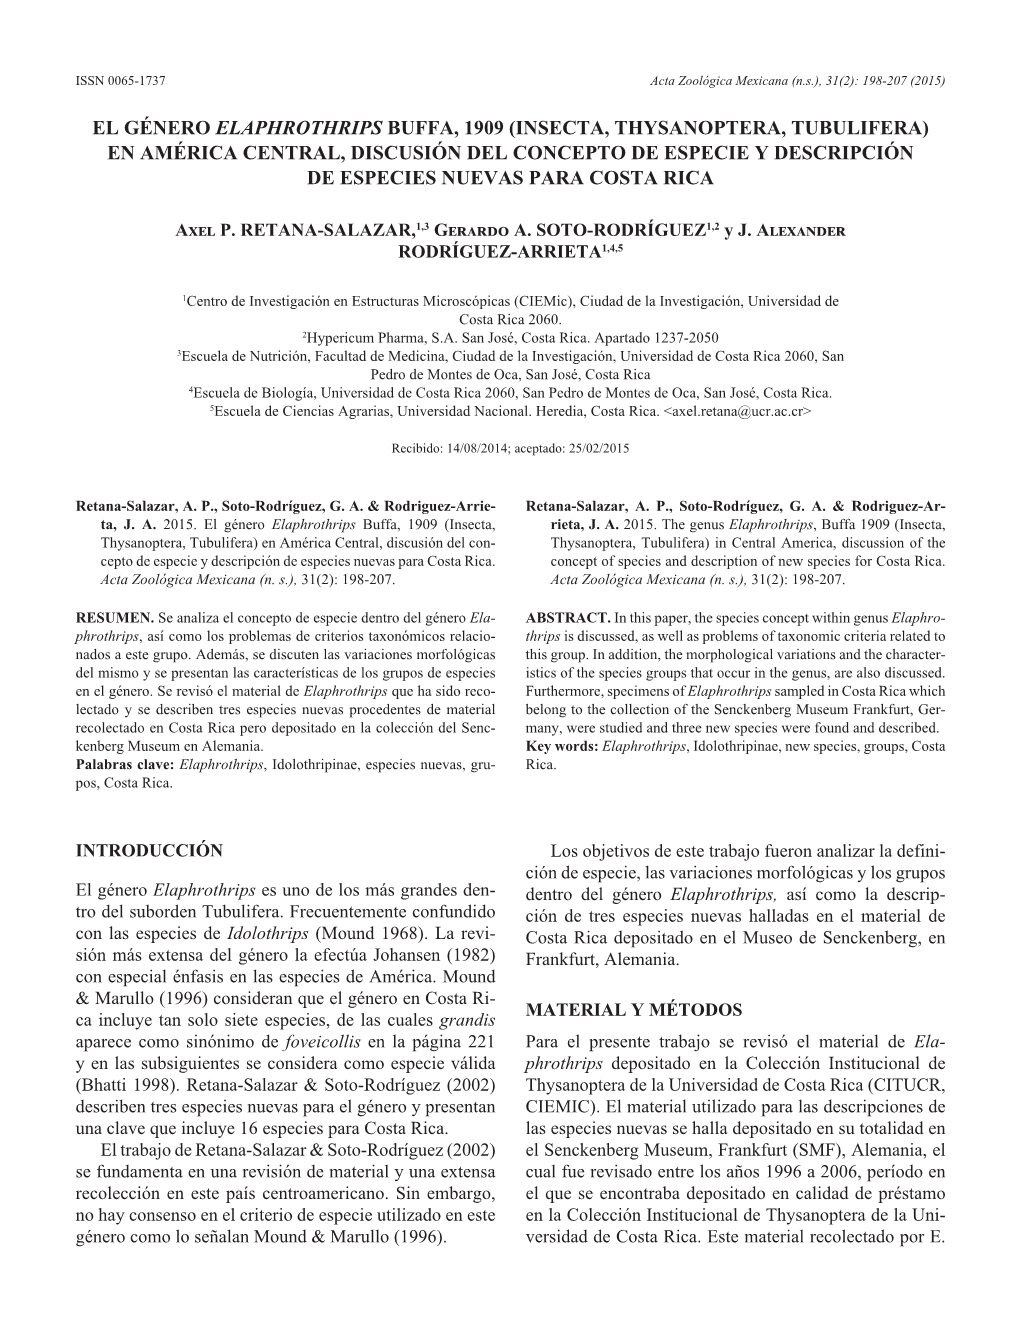 Insecta, Thysanoptera, Tubulifera) En América Central, Discusión Del Concepto De Especie Y Descripción De Especies Nuevas Para Costa Rica